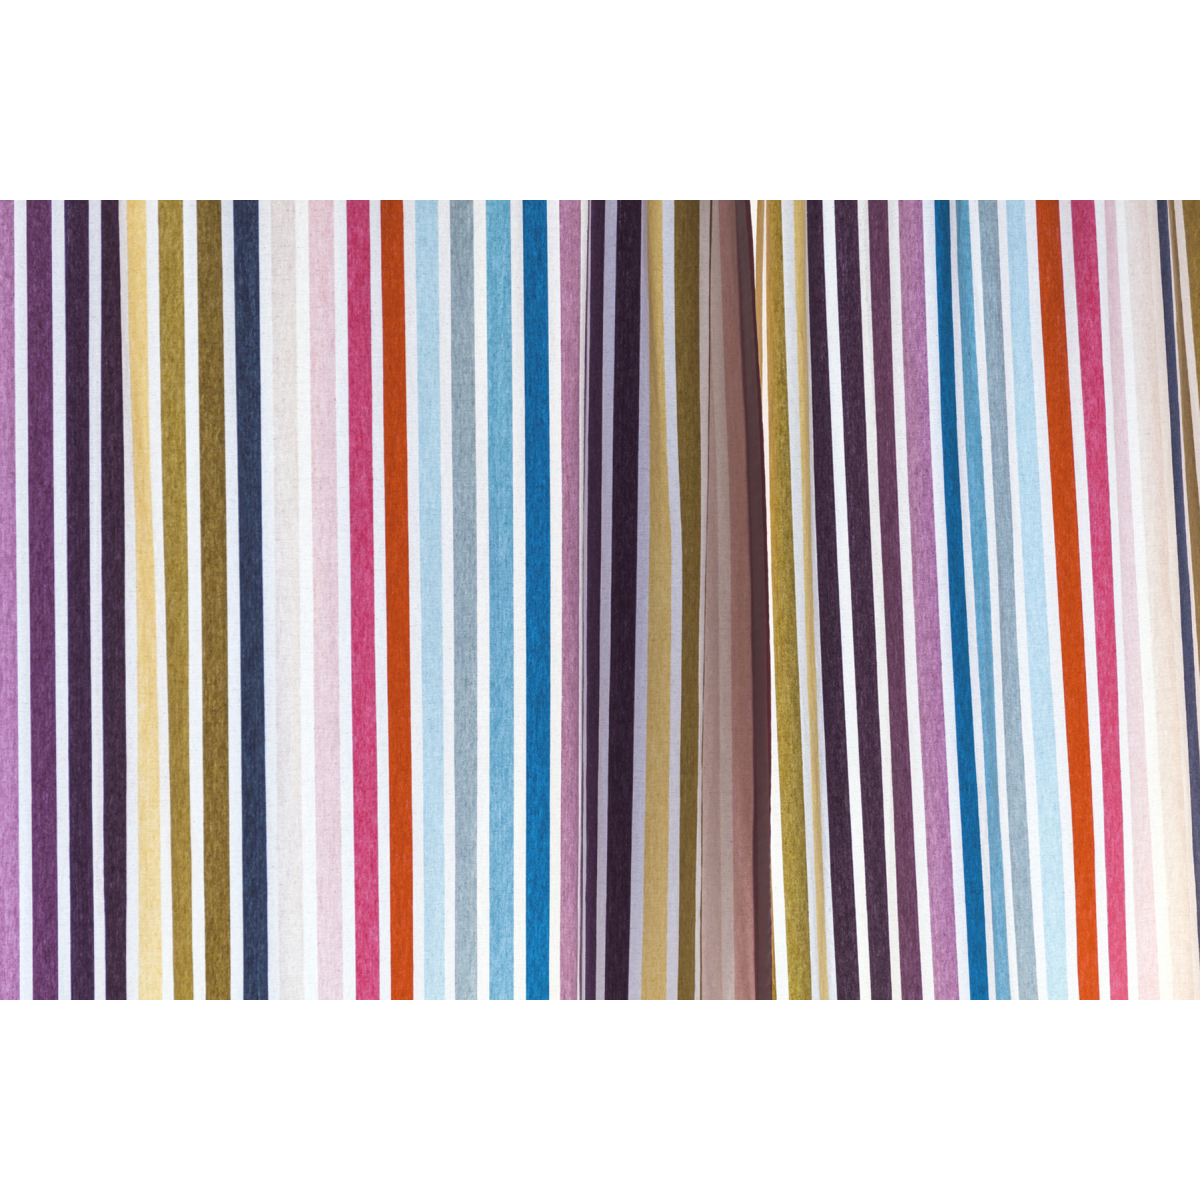 Papier peint panoramique Colorful Striped - Collection Acte-Deco